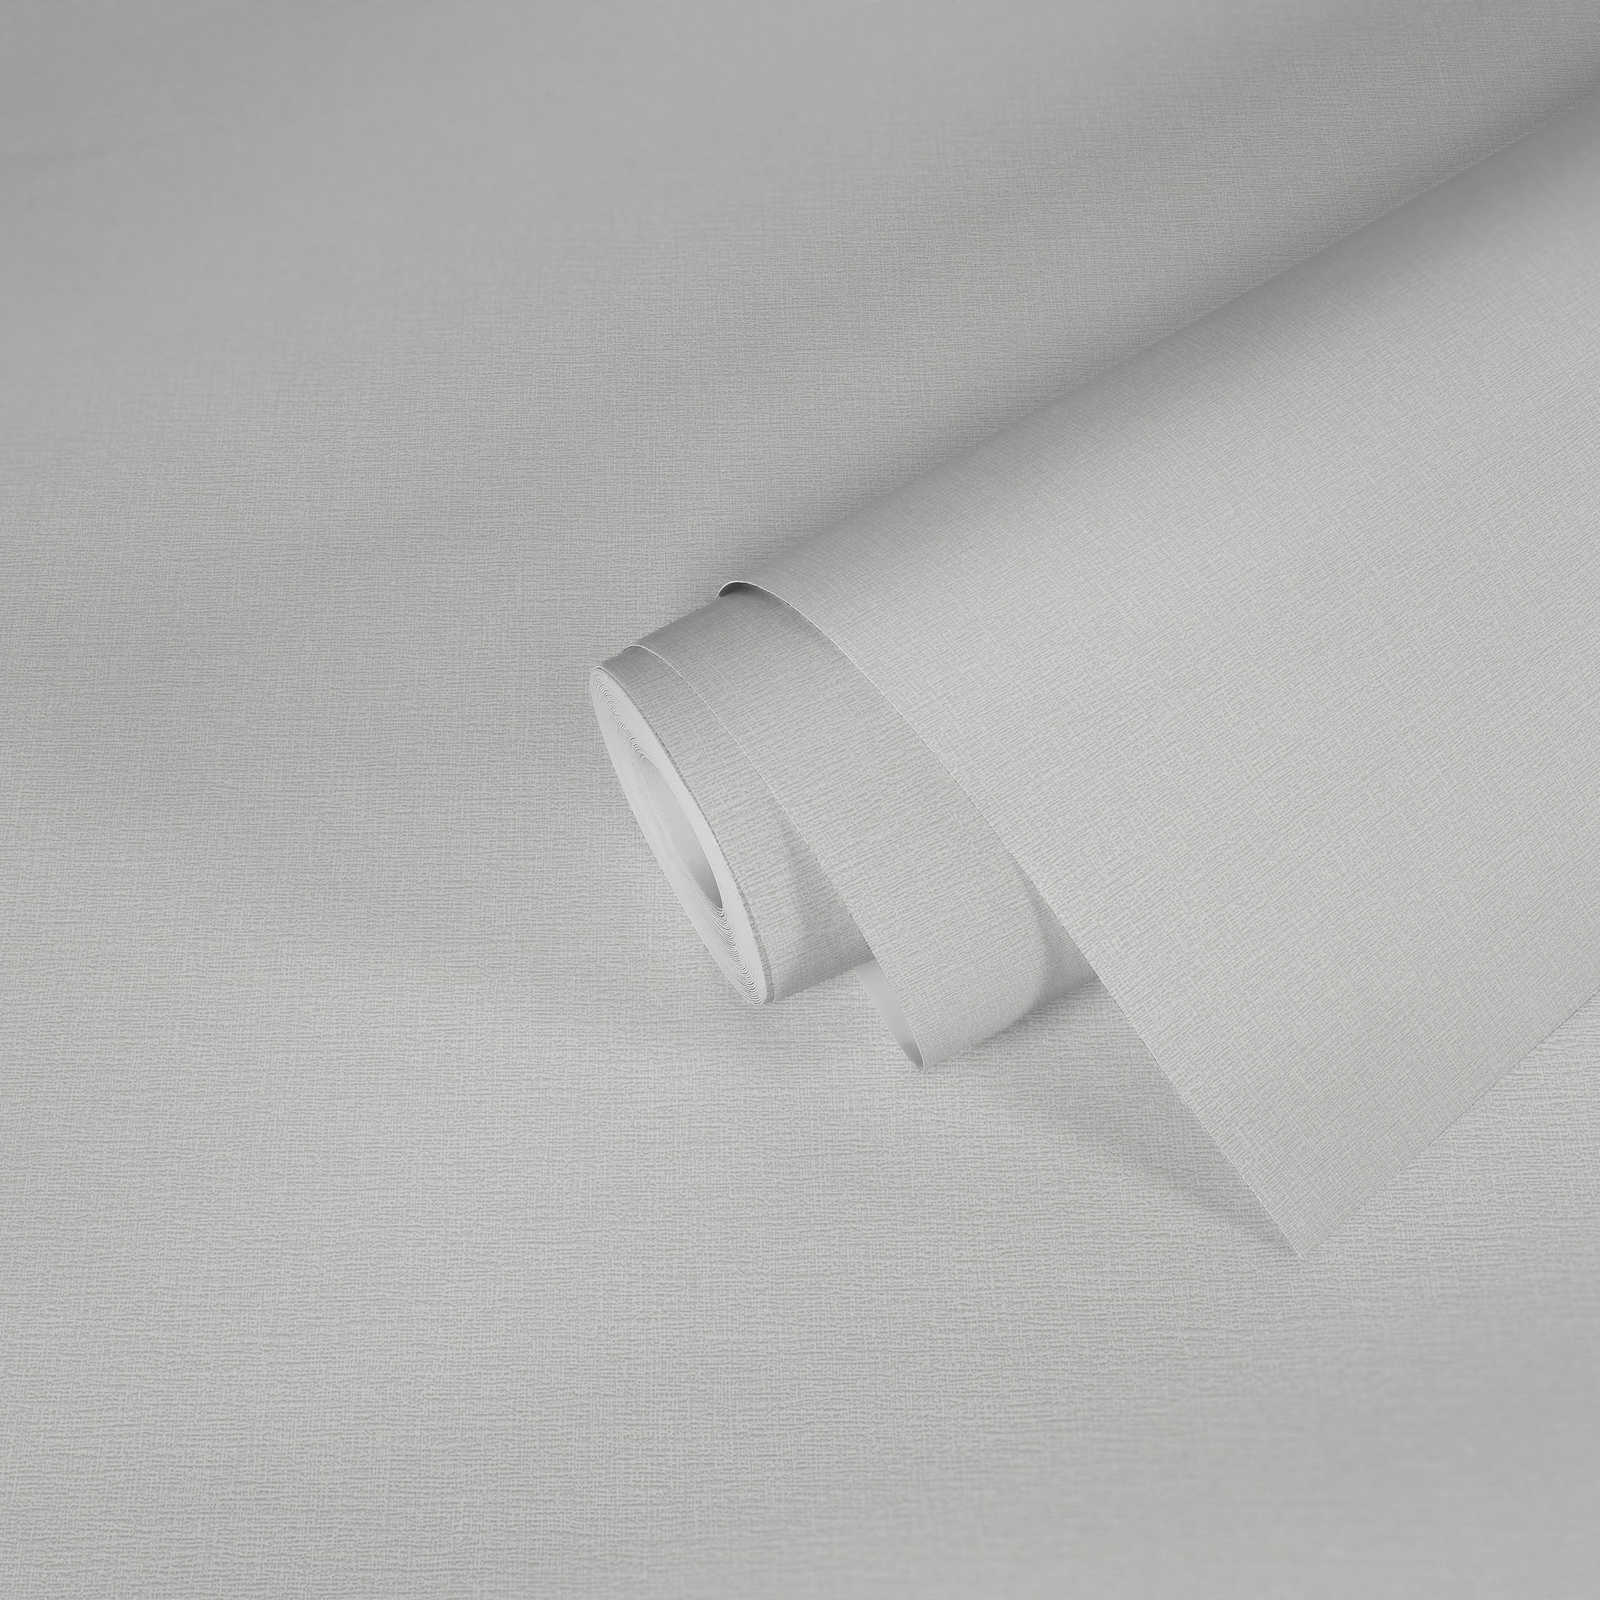             Papier peint blanc naturel mat avec motifs structurés discrets
        